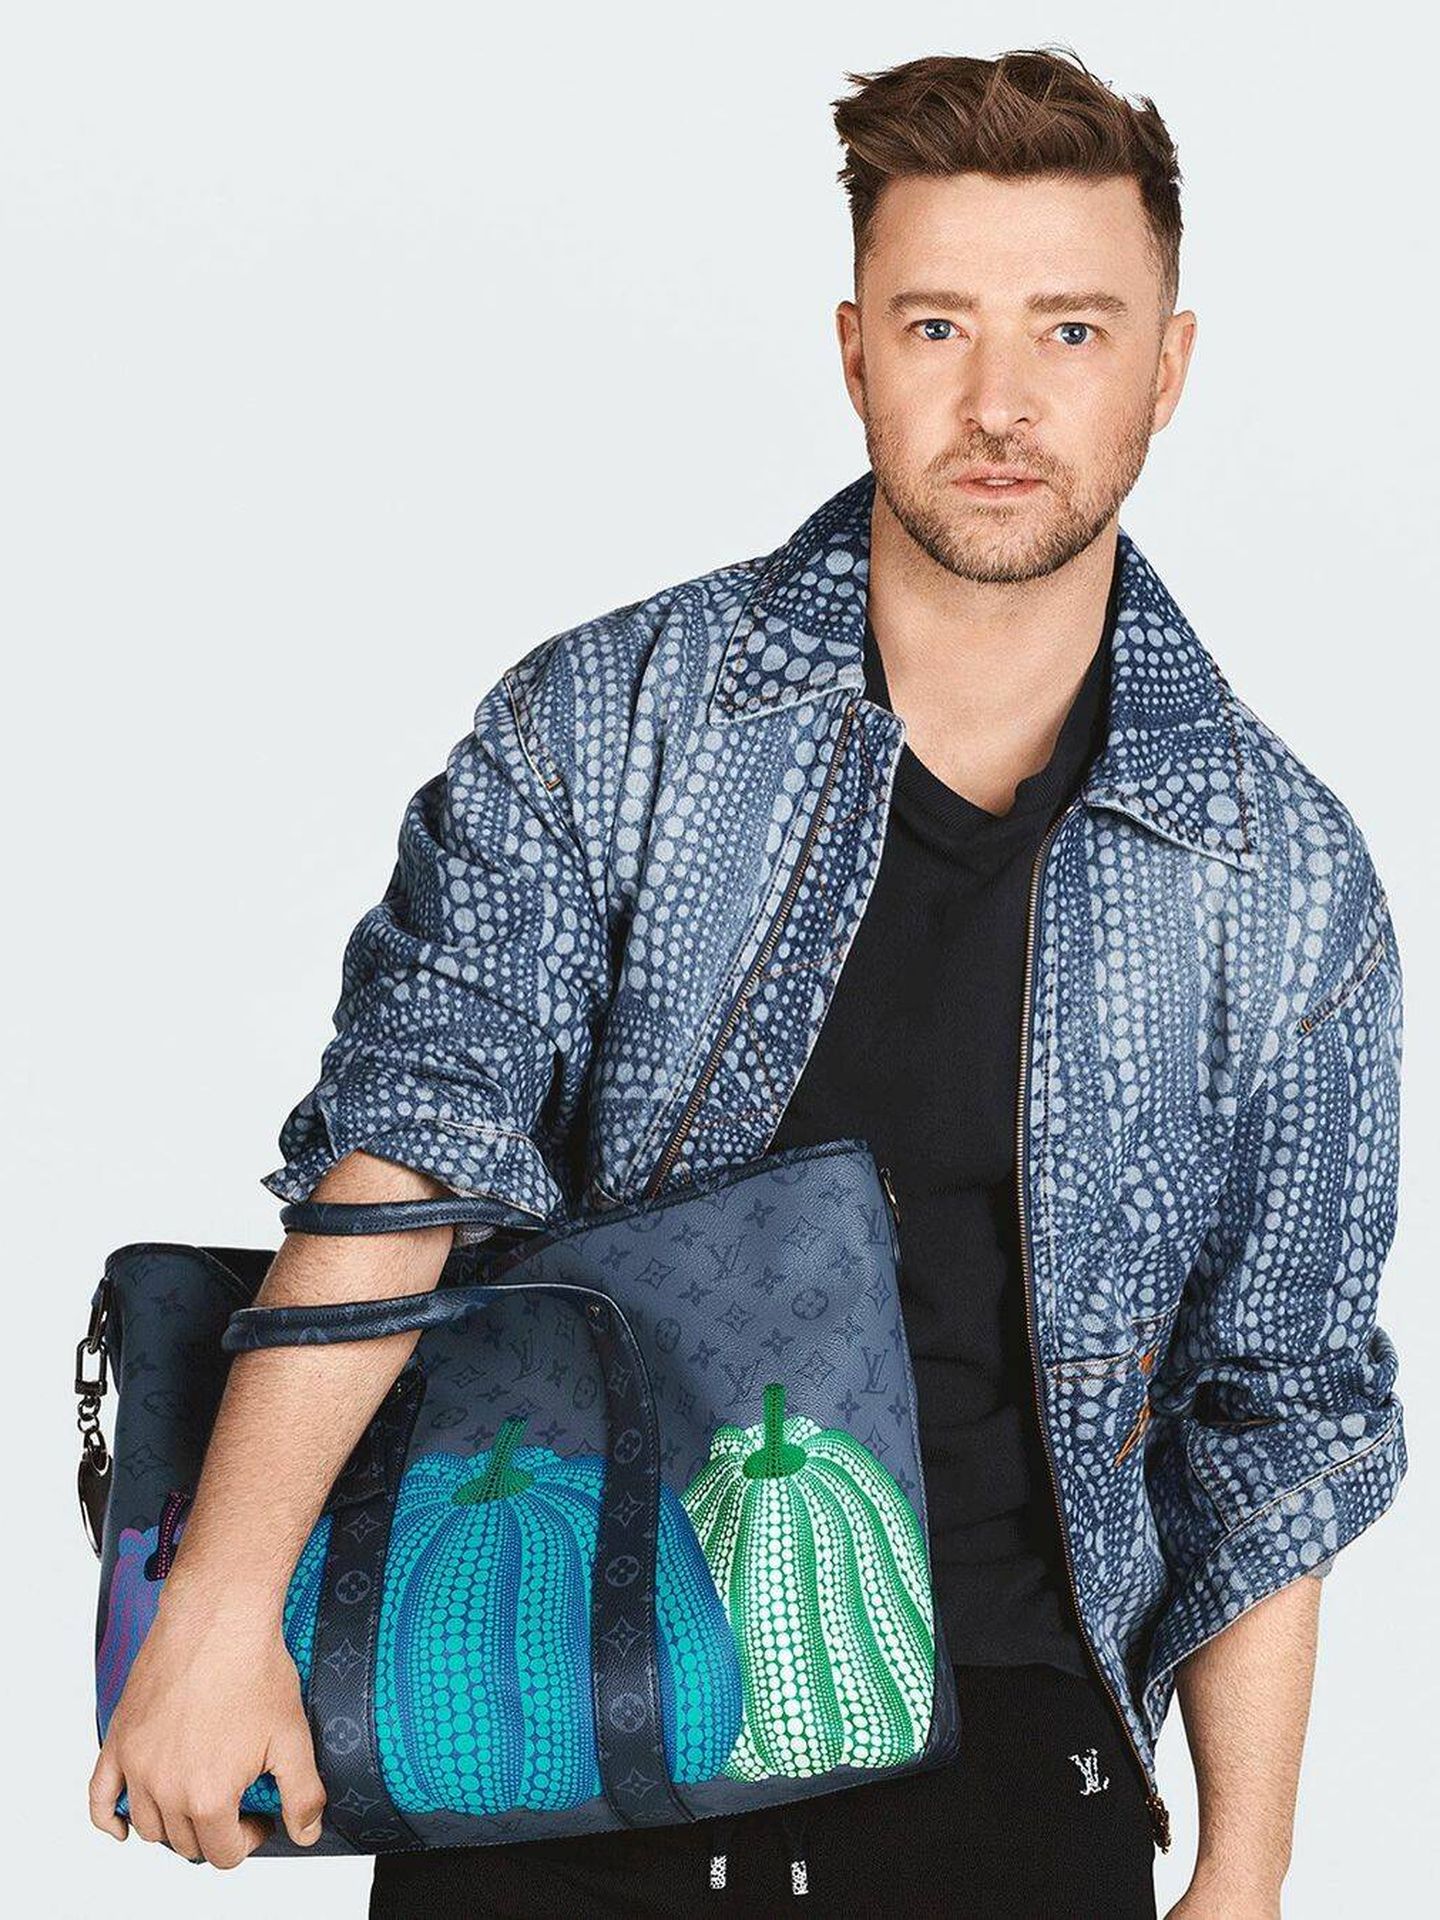 Justin Timberlake, como imagen de la campaña. (Instagram/@louisvuitton)